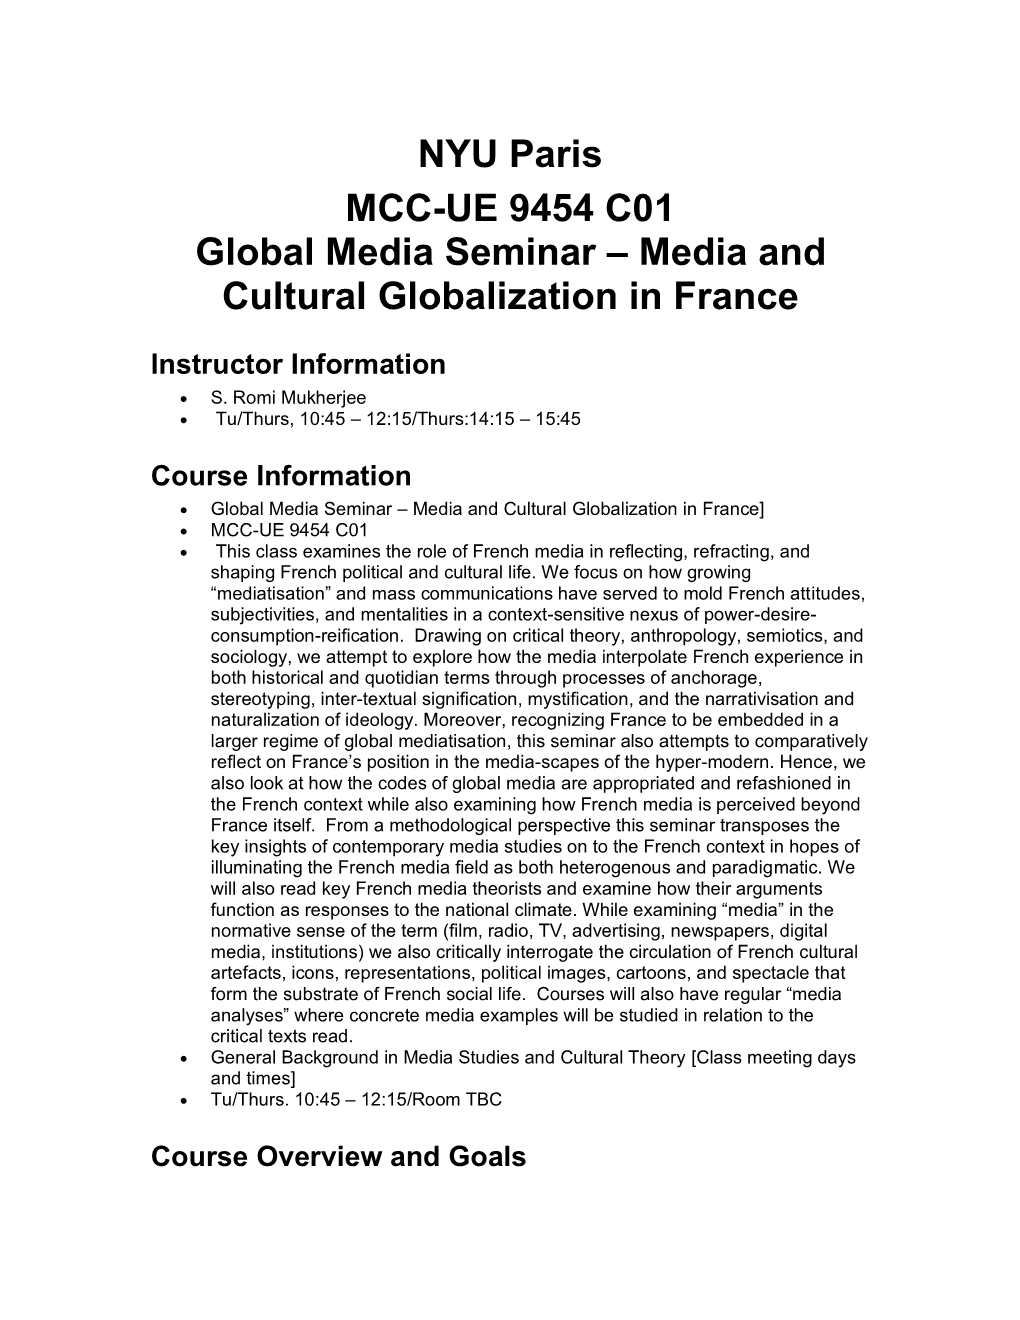 NYU Paris MCC-UE 9454 C01 Global Media Seminar – Media and Cultural Globalization in France